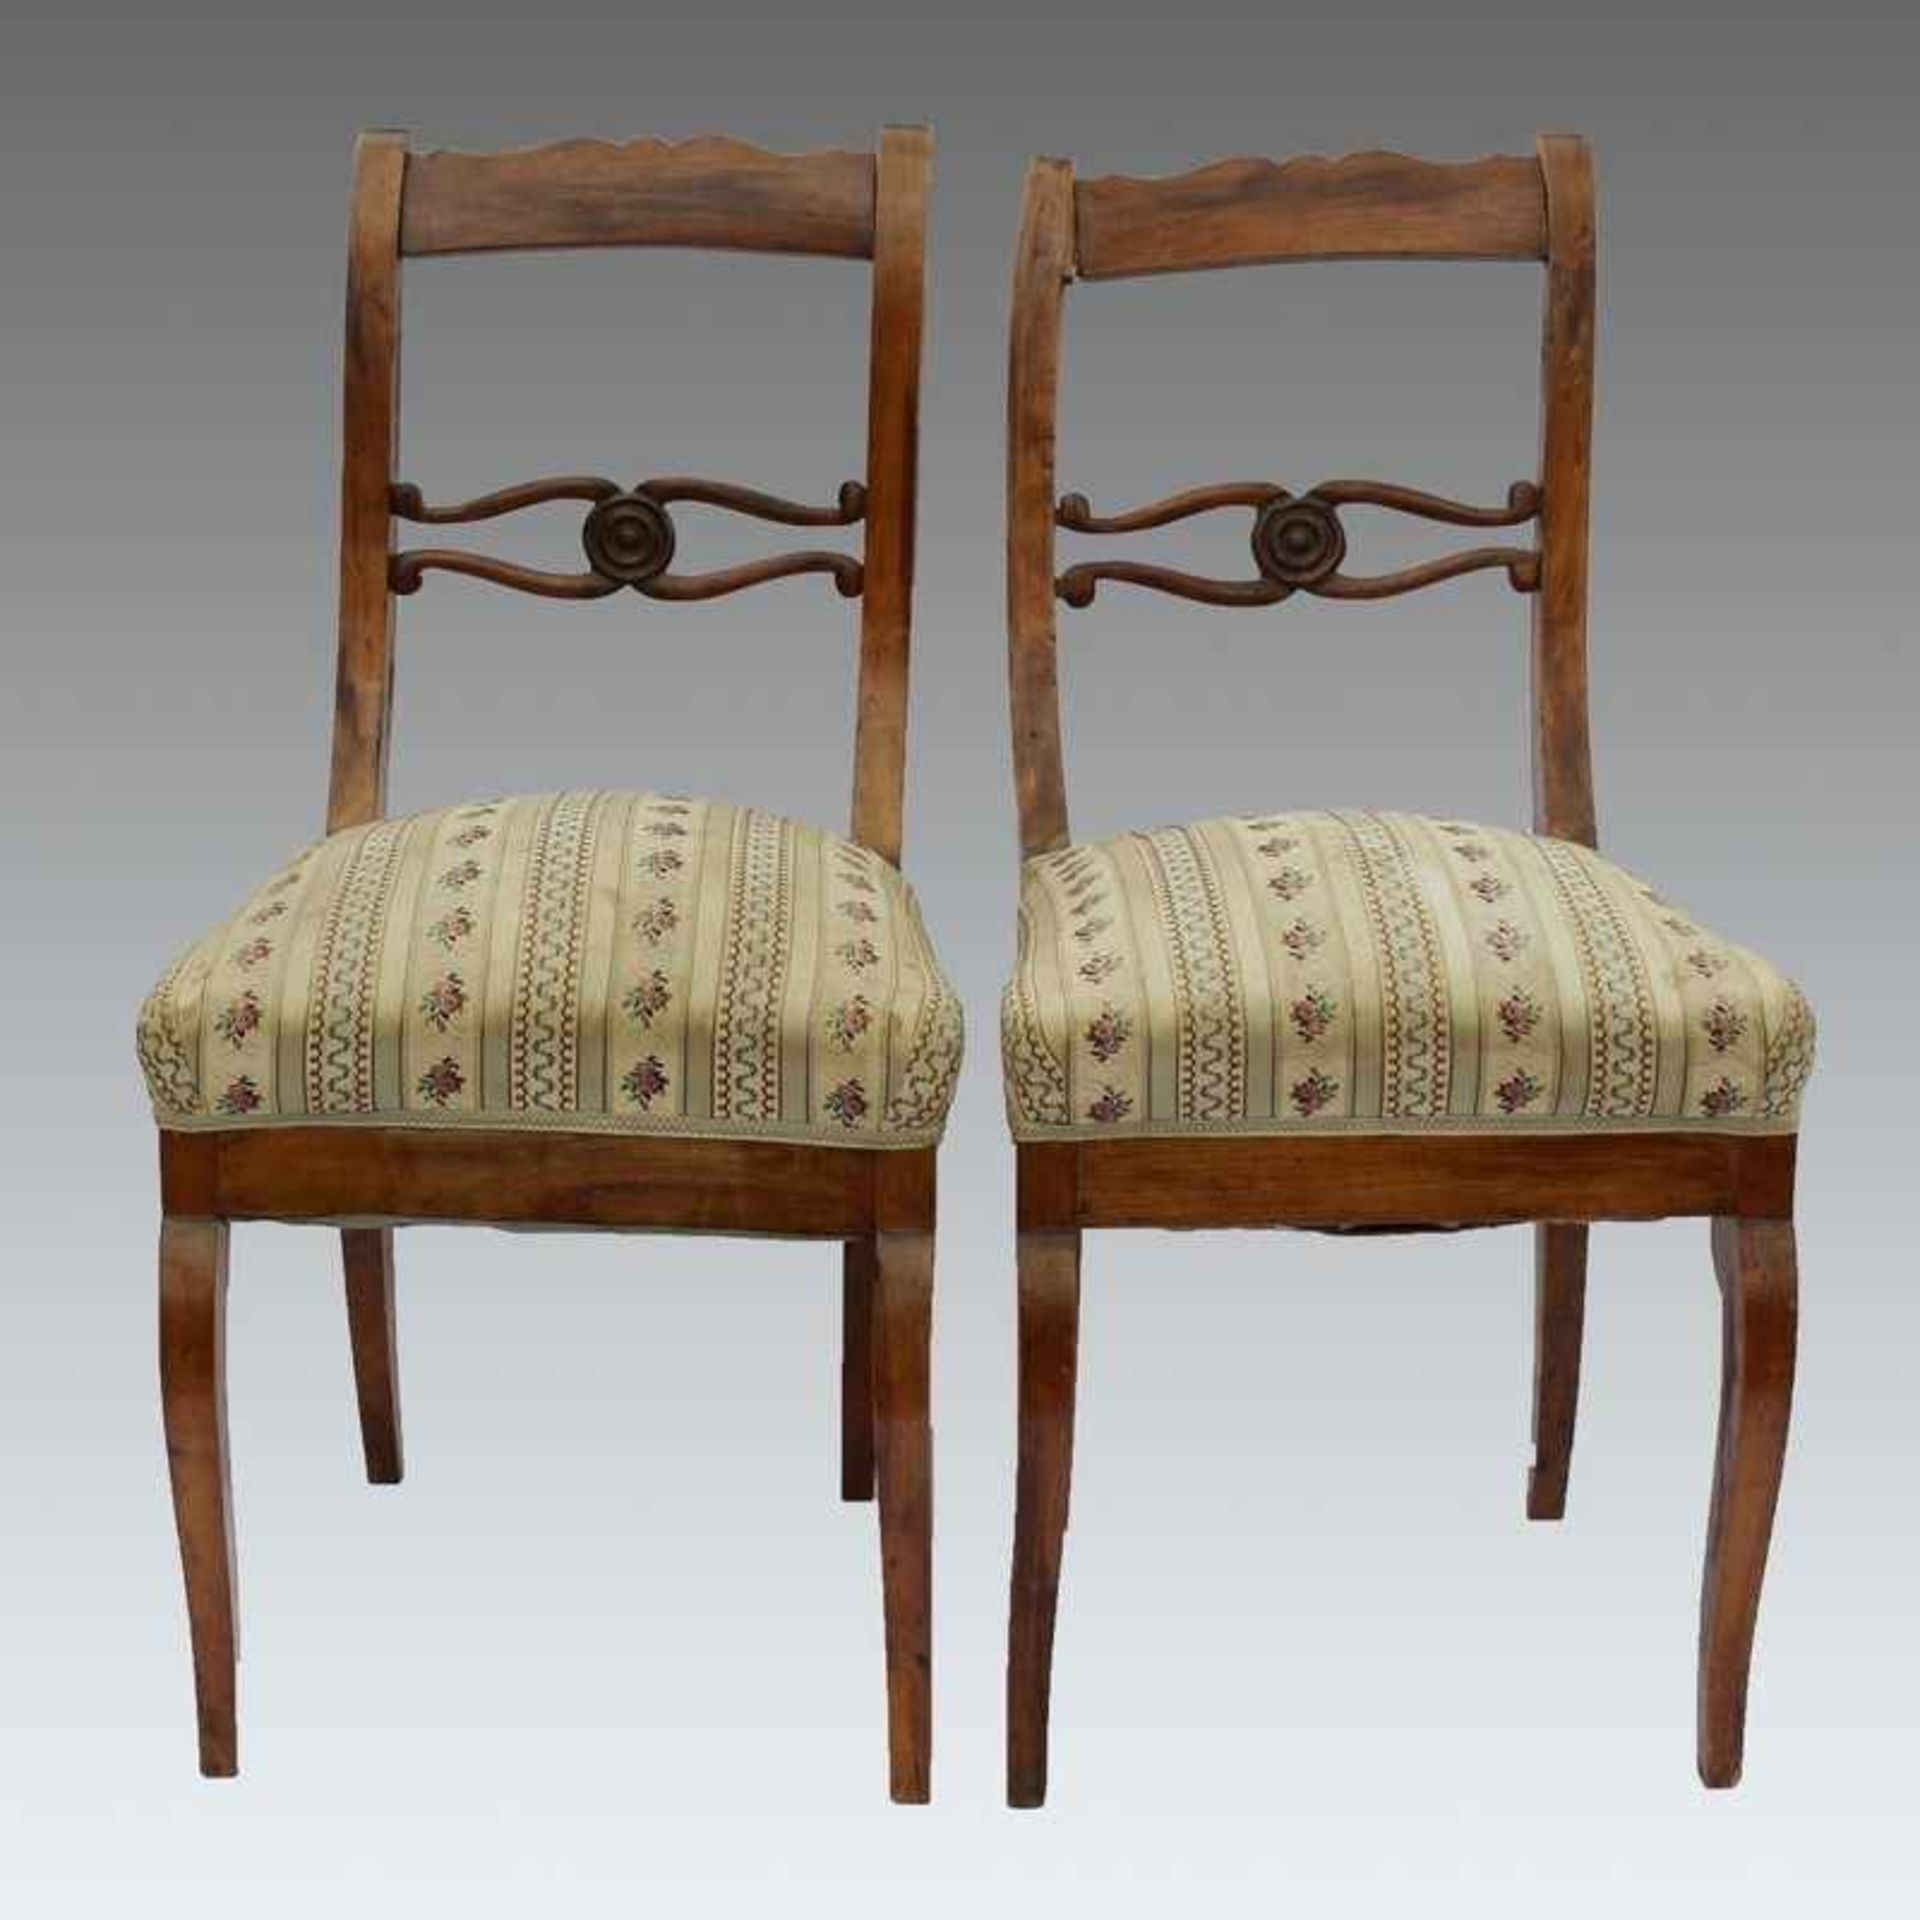 Biedermeier - Paar Stühle um 1830, westdeutsch, Nussbaum furniert, Vierkantbeine, vs. gebogt,